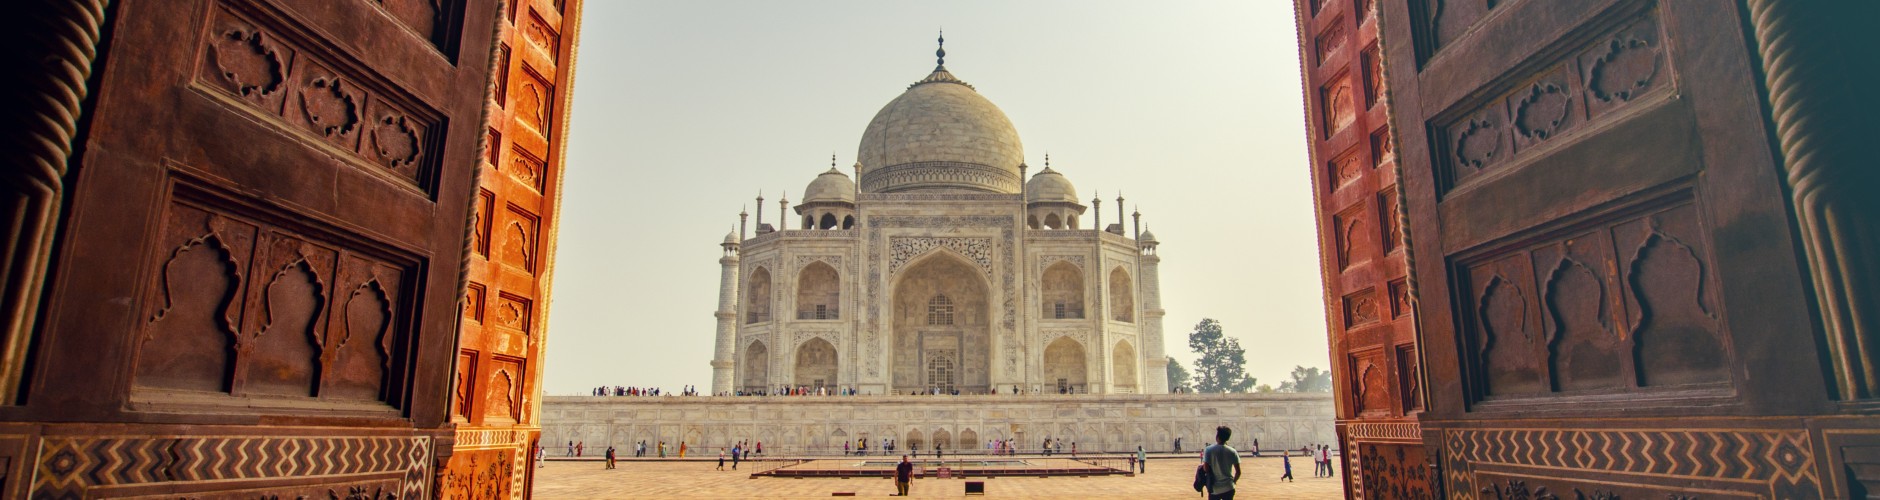 Front view of Taj Mahal